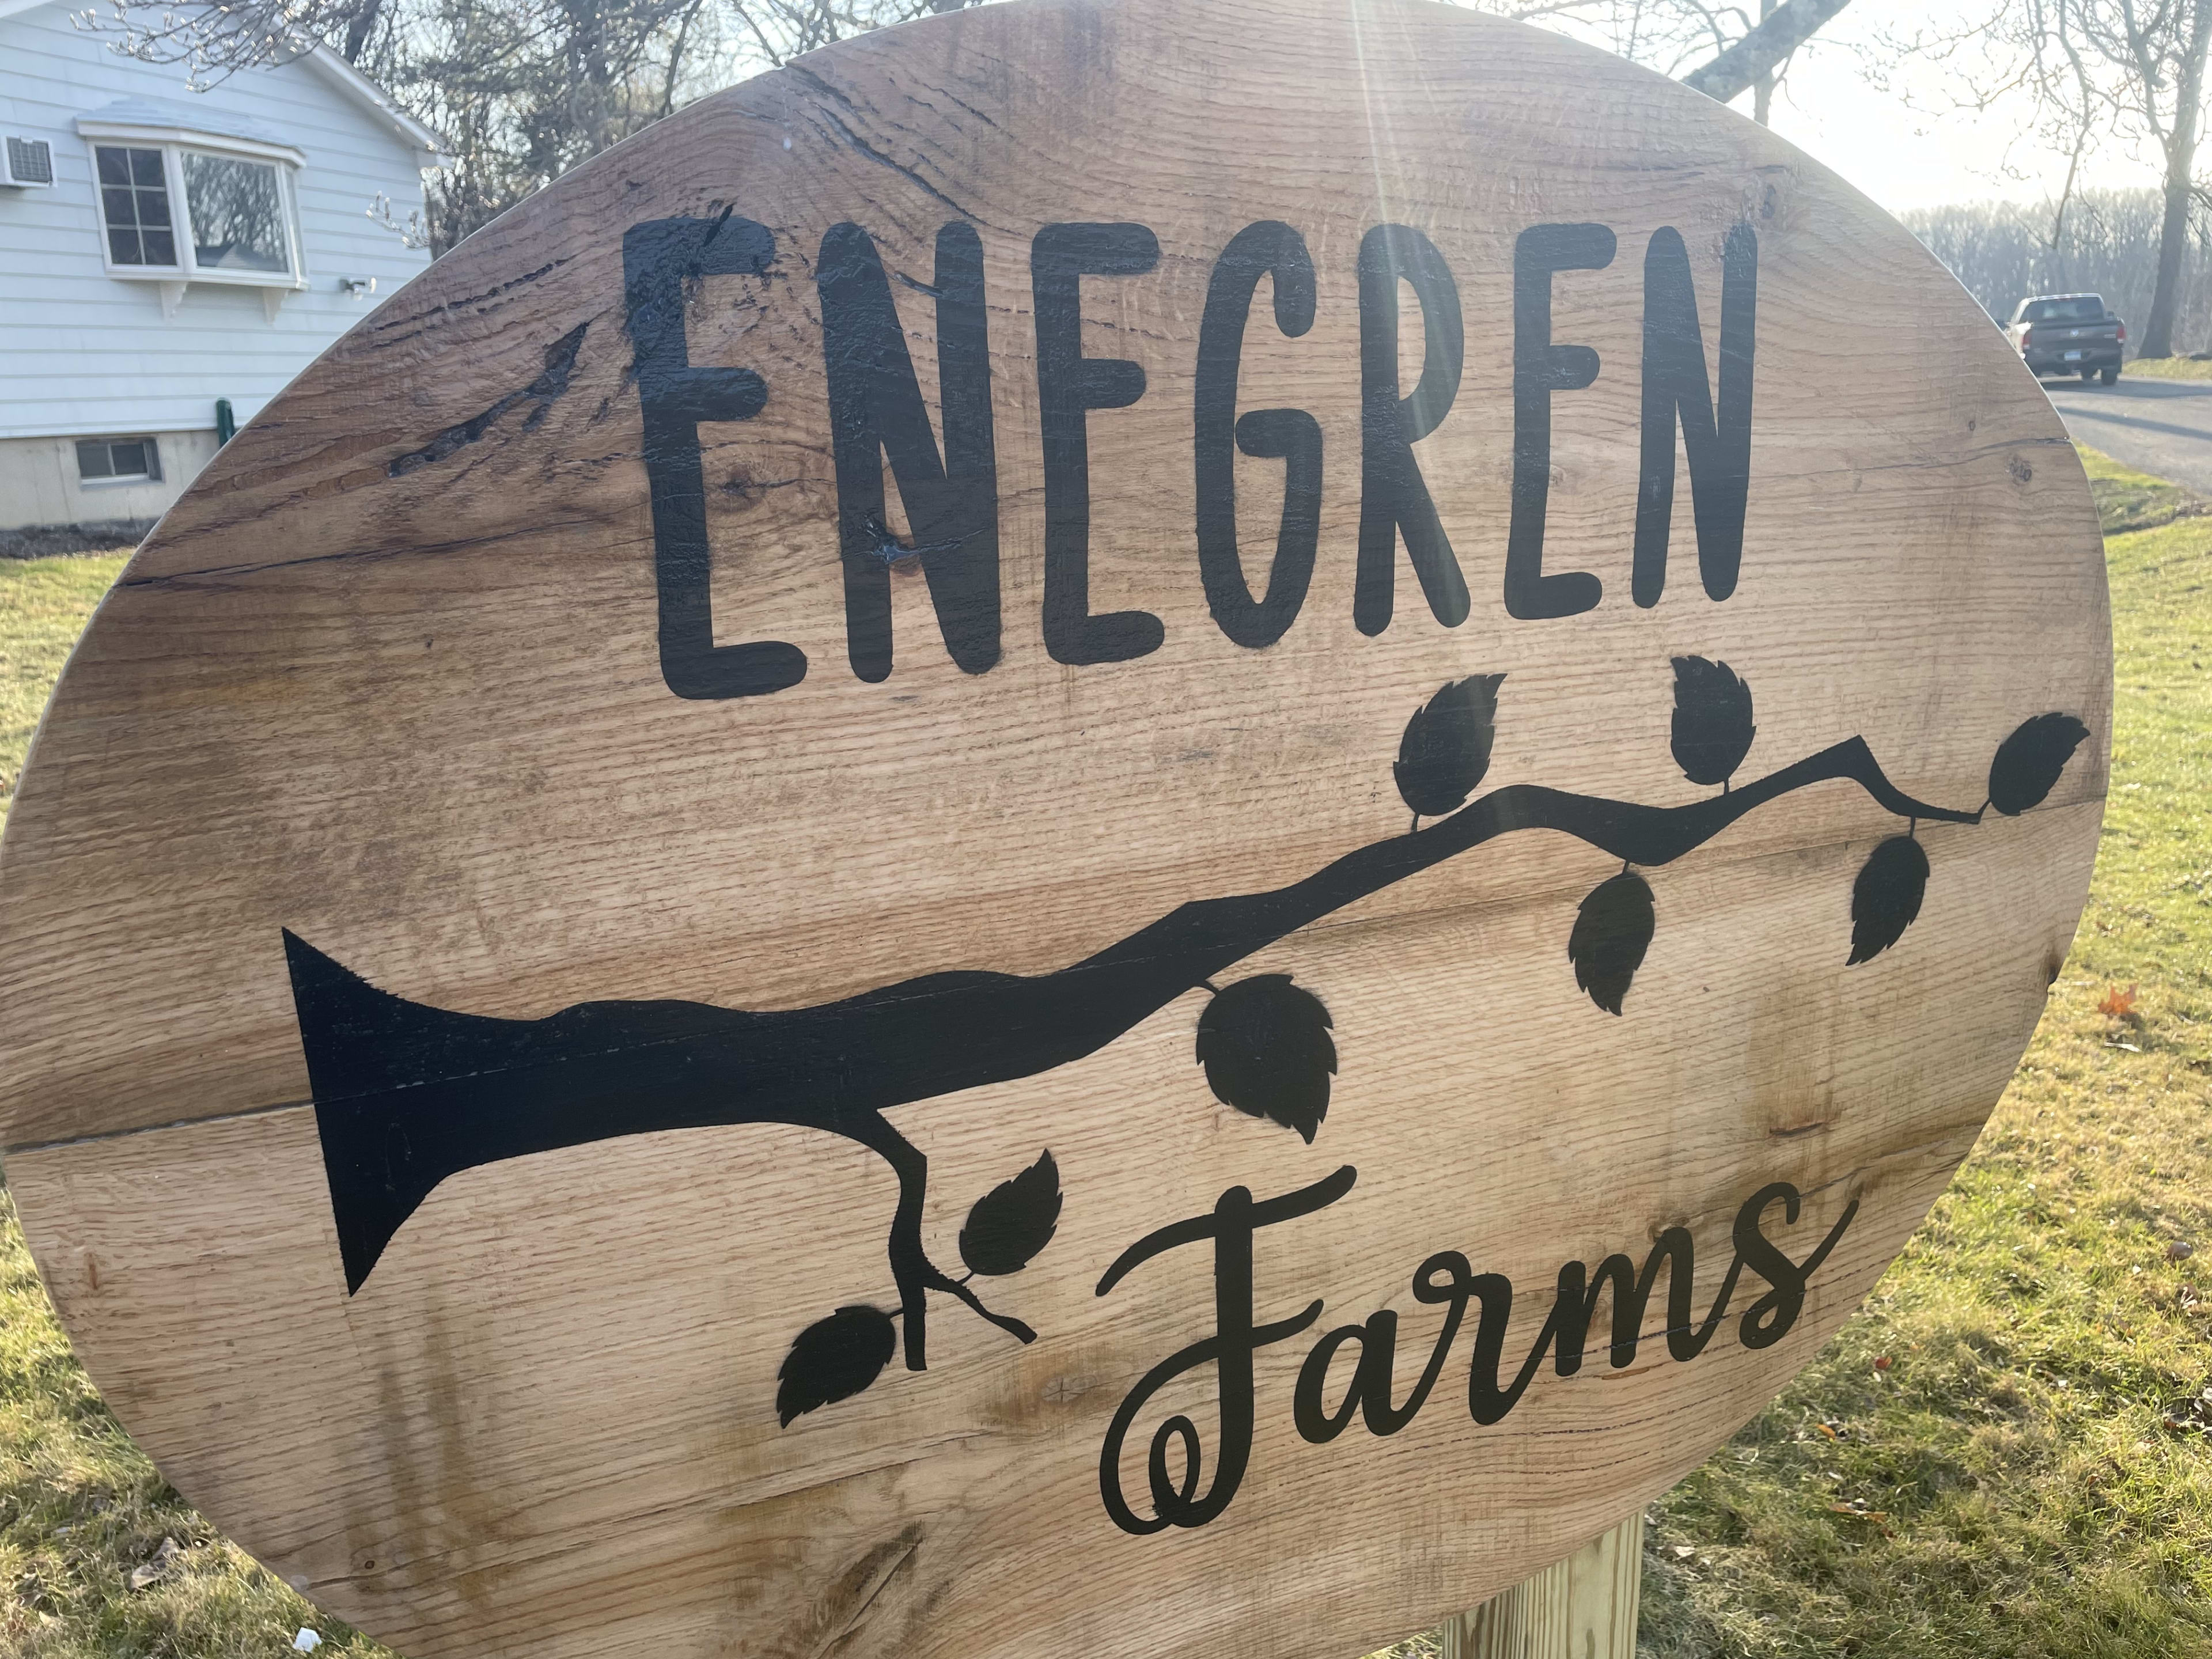 Enegren Farm